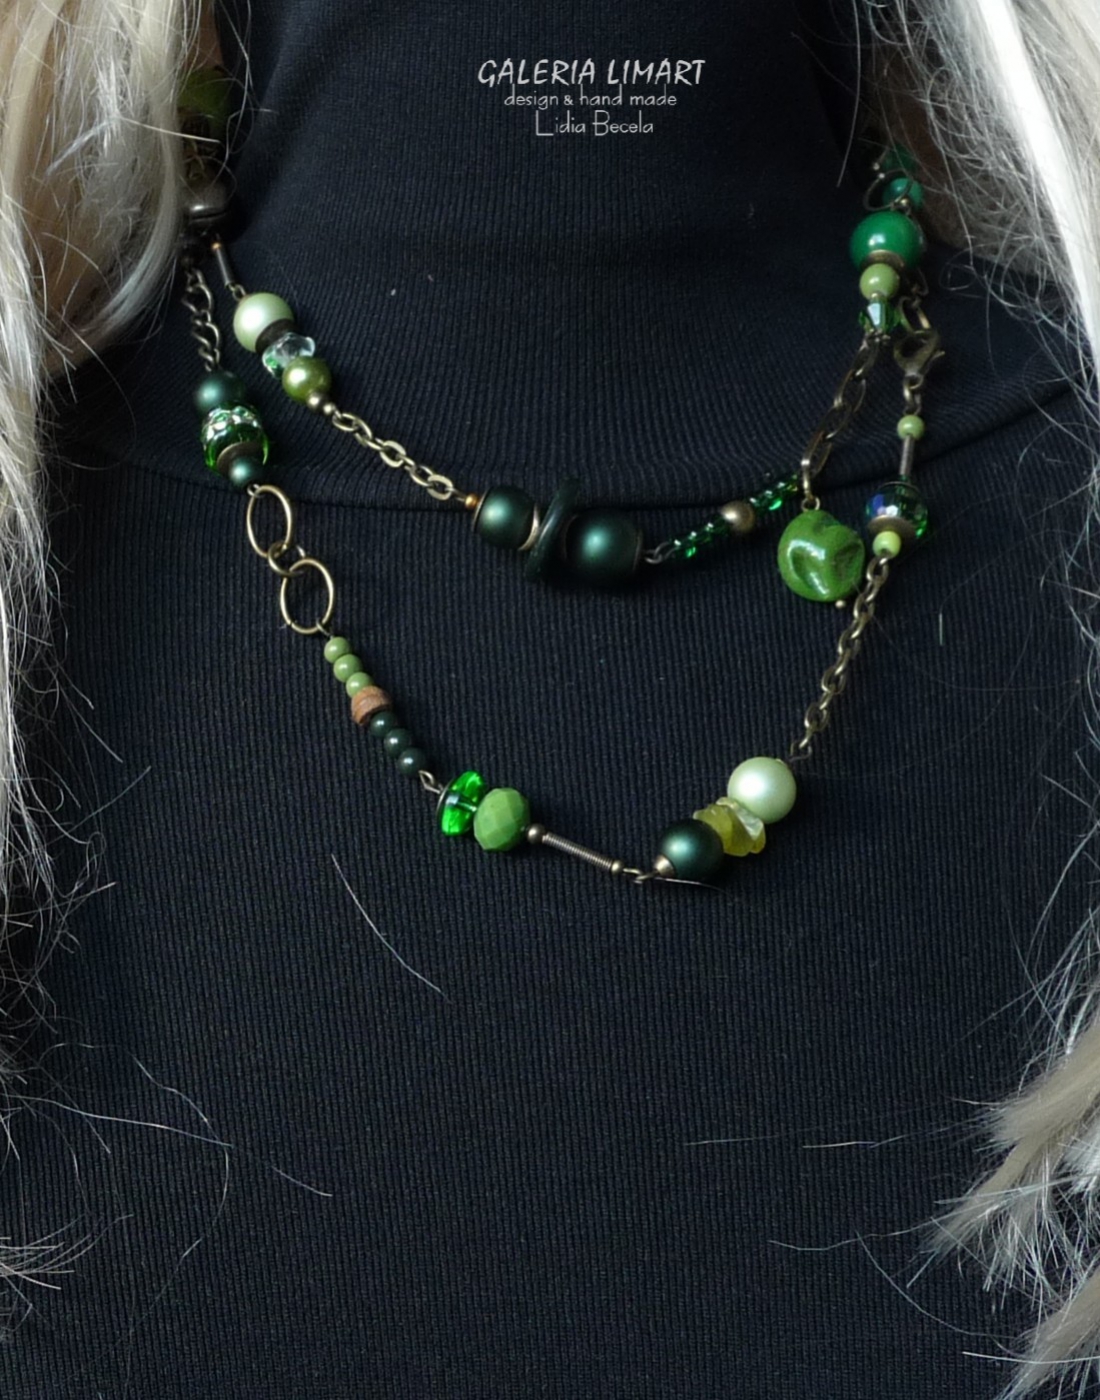 Szkło weneckie, ceramika, perły, kokos, szkło, akryl, minerały, kryształ, bali i mnóstwa mosiężnych elementów ozdobnych w okazałym pięknym zielonym naszyjniku handmade